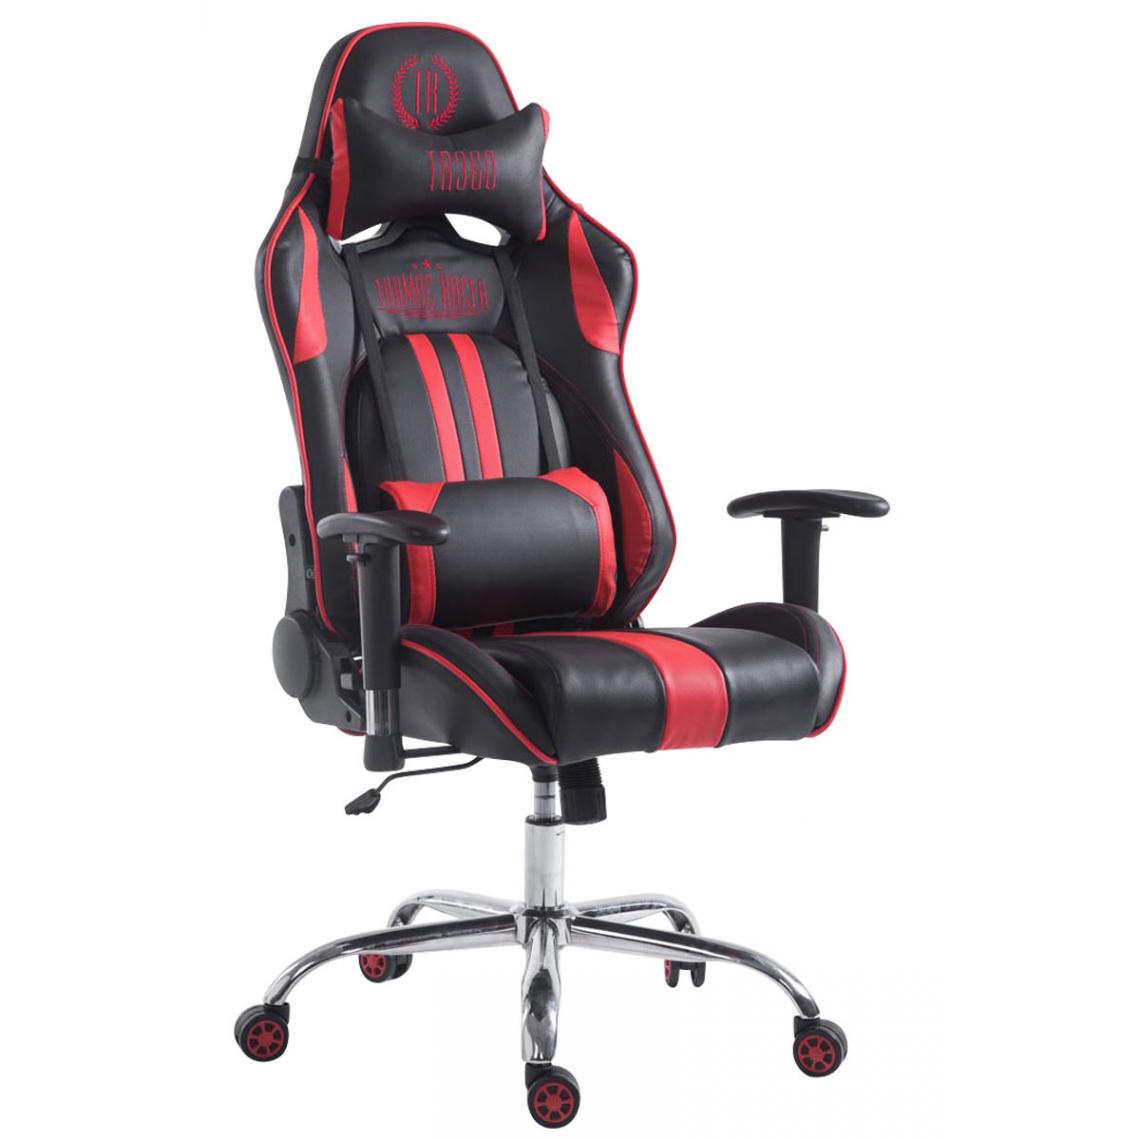 Icaverne - Admirable Chaise de bureau selection Luanda Limit V2 cuir synthétique sans repose-pieds couleur noir rouge - Chaises